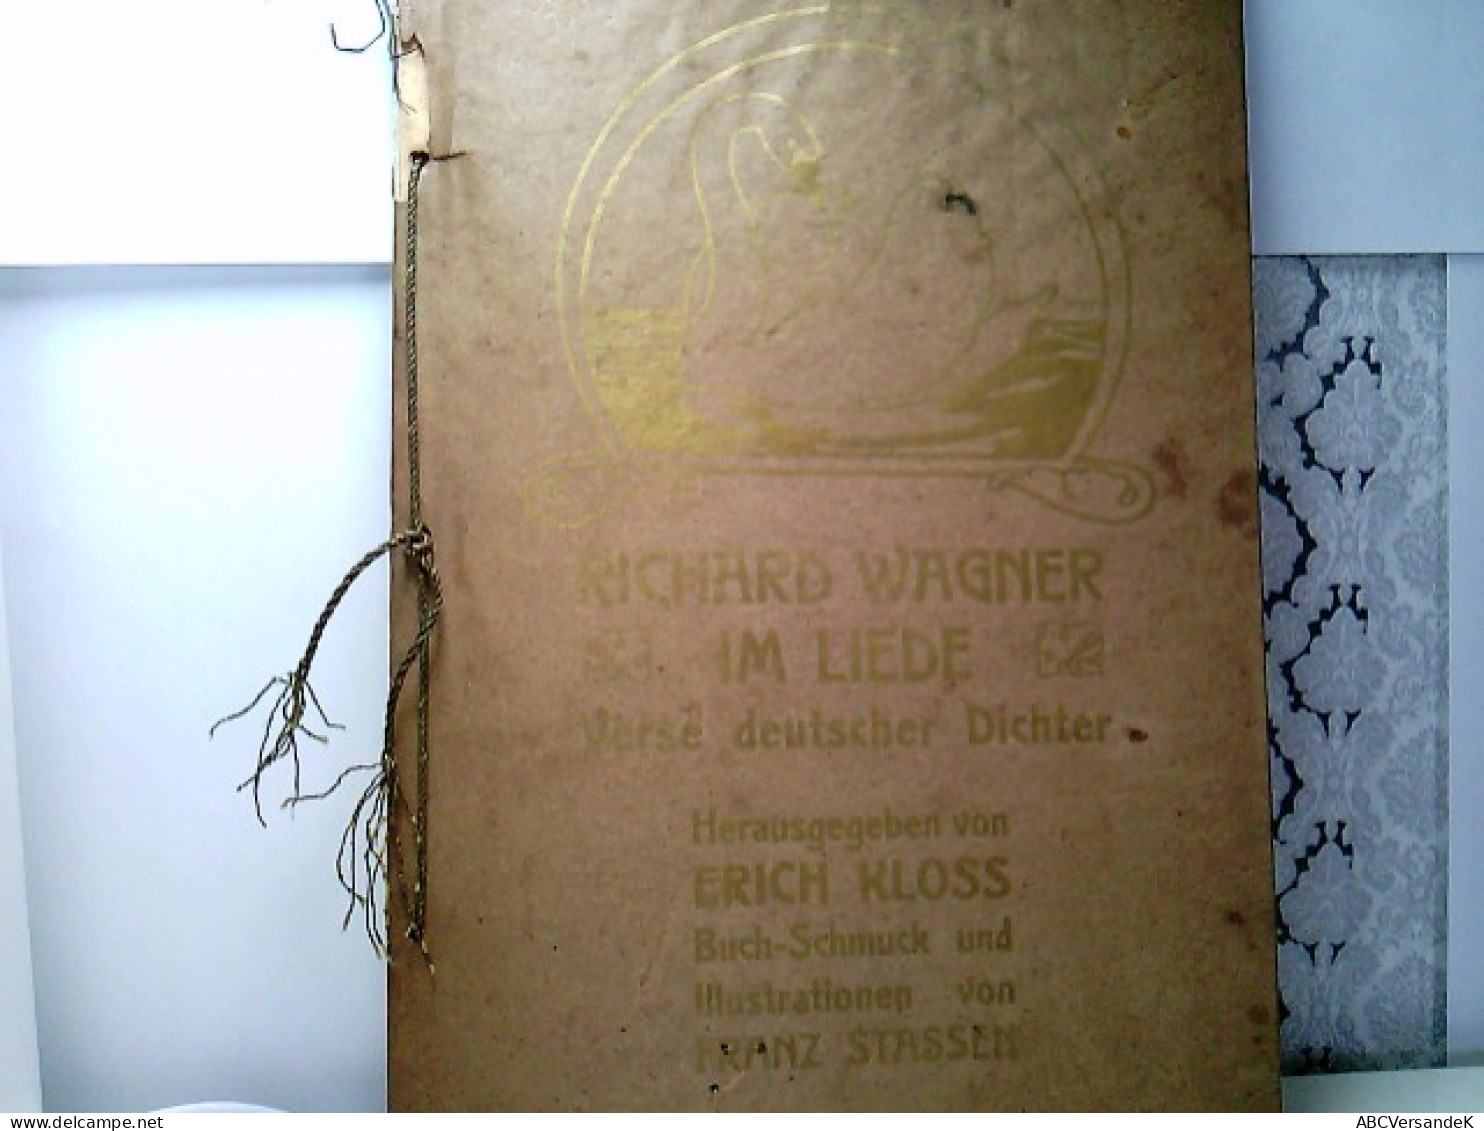 Richard Wagner Im Liede. Verse Deutscher Dichter. - Duitse Auteurs